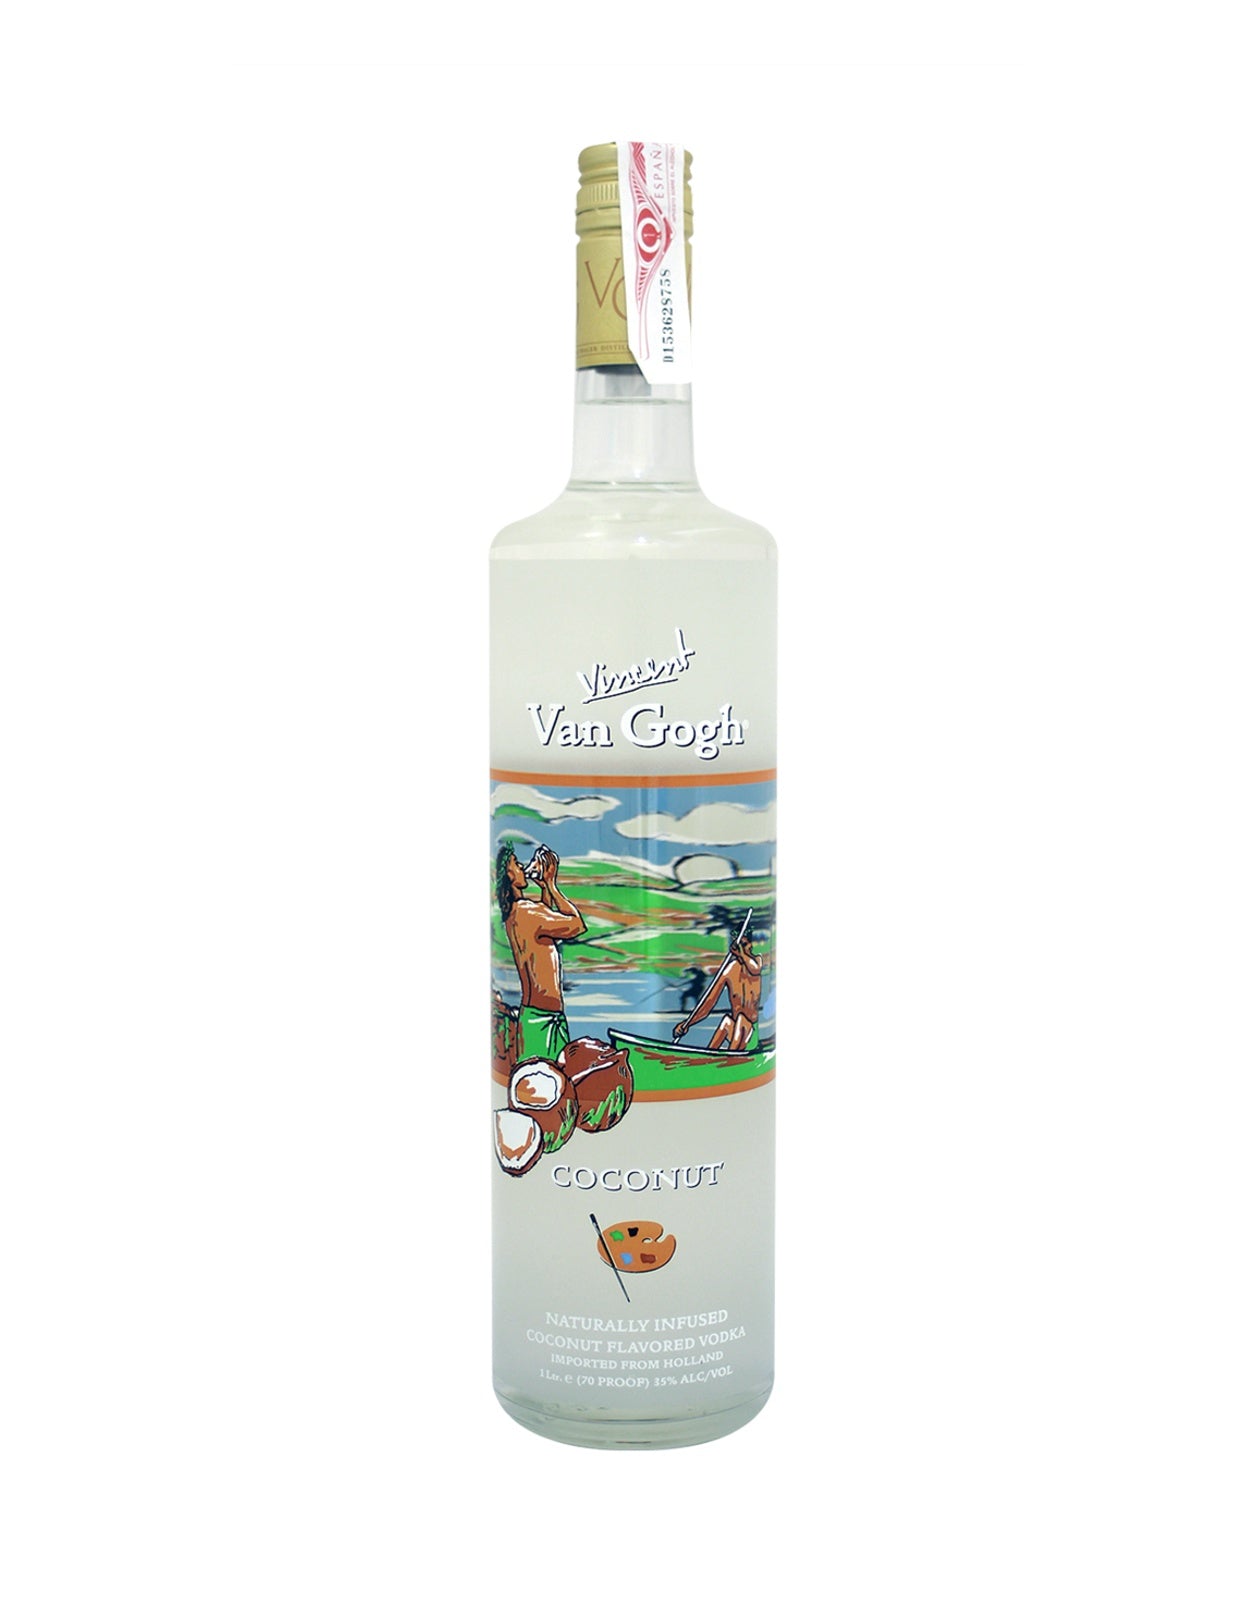 Van Gogh Coconut Vodka